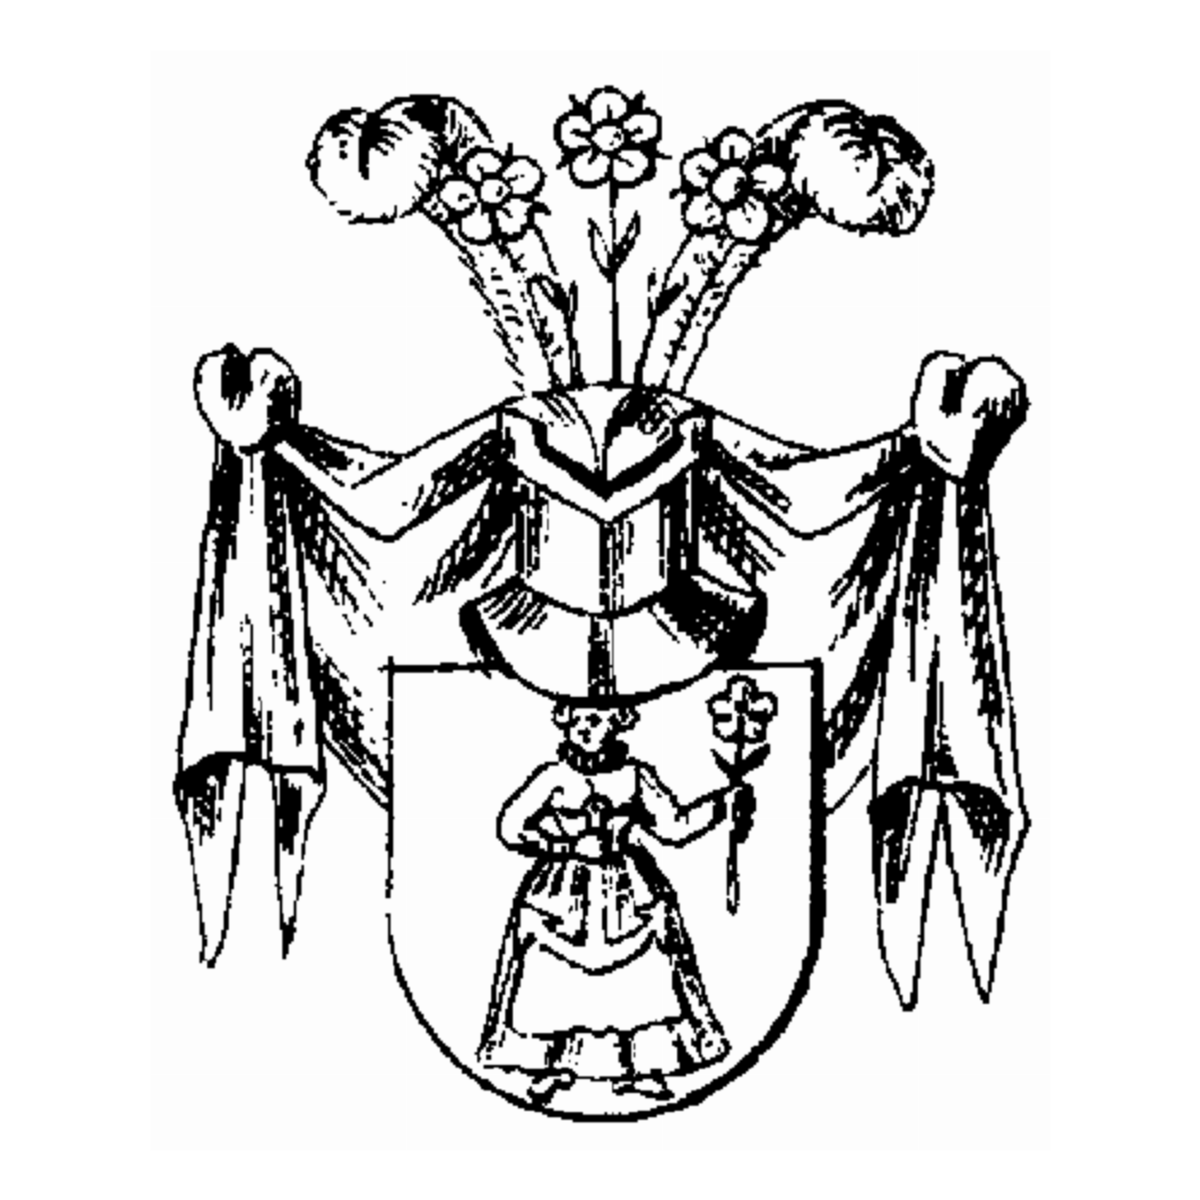 Wappen der Familie Guidoni